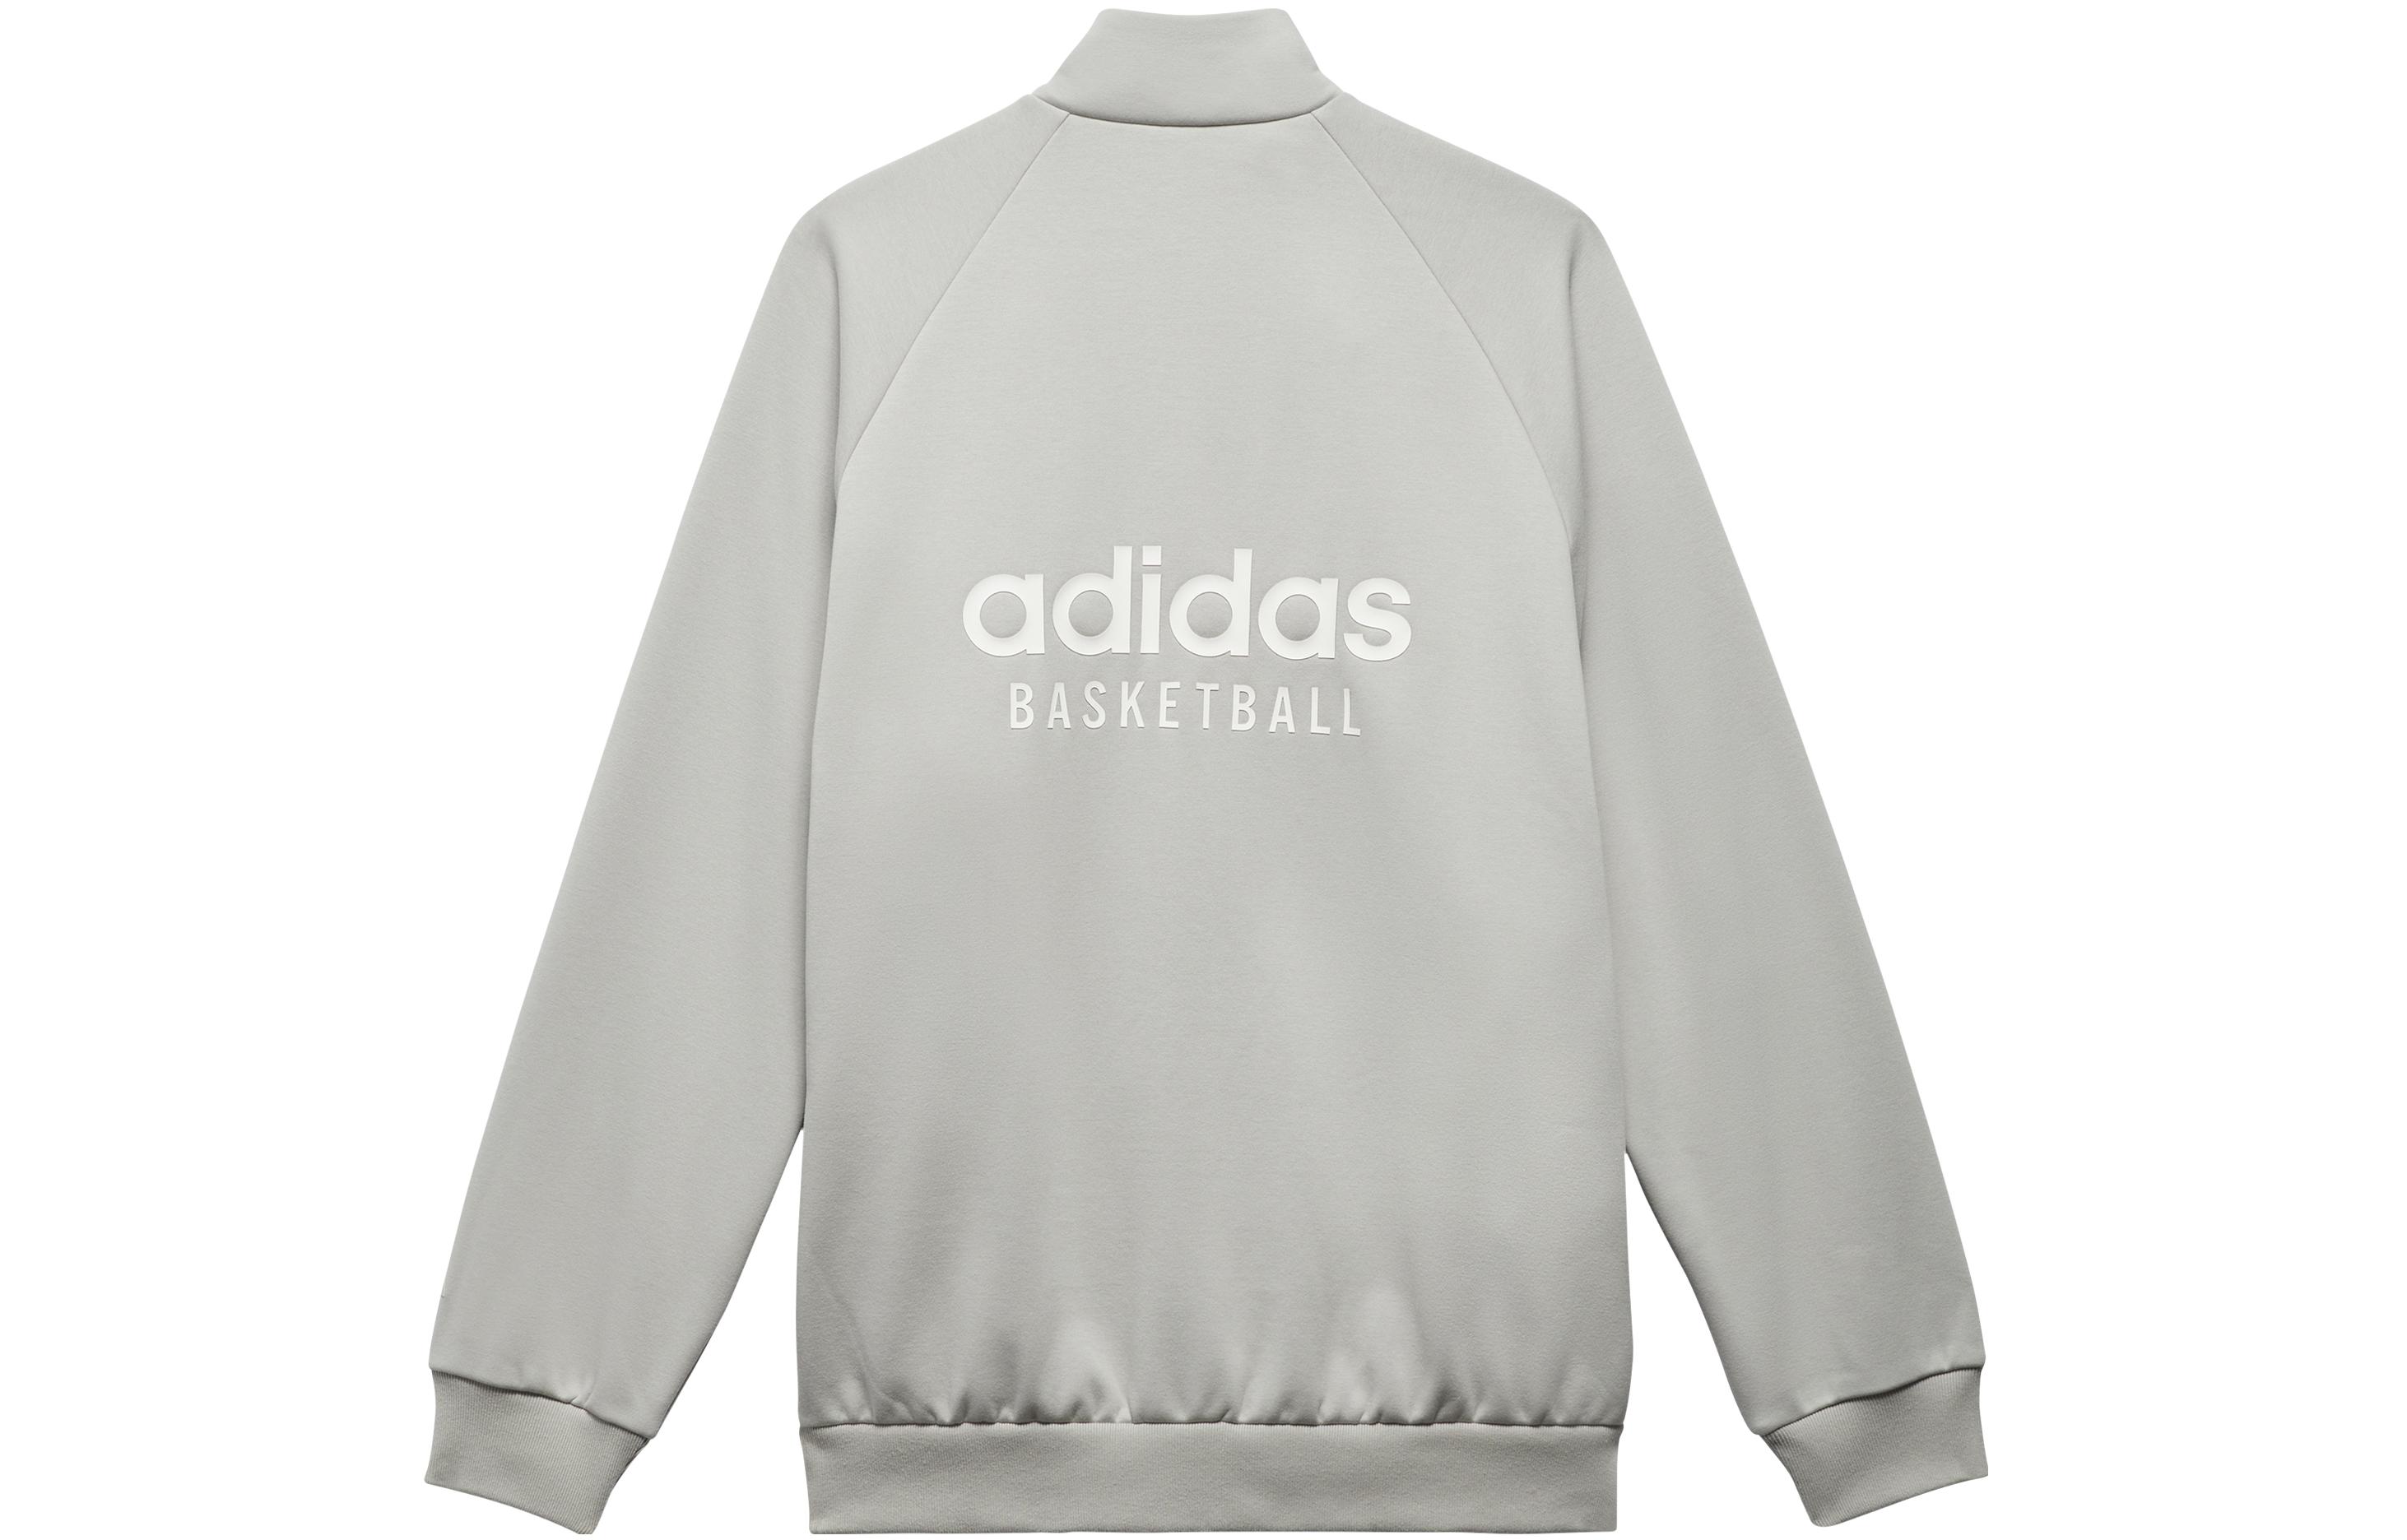 Adidas Баскетбольная спортивная куртка Мужская на молнии Серая, серый